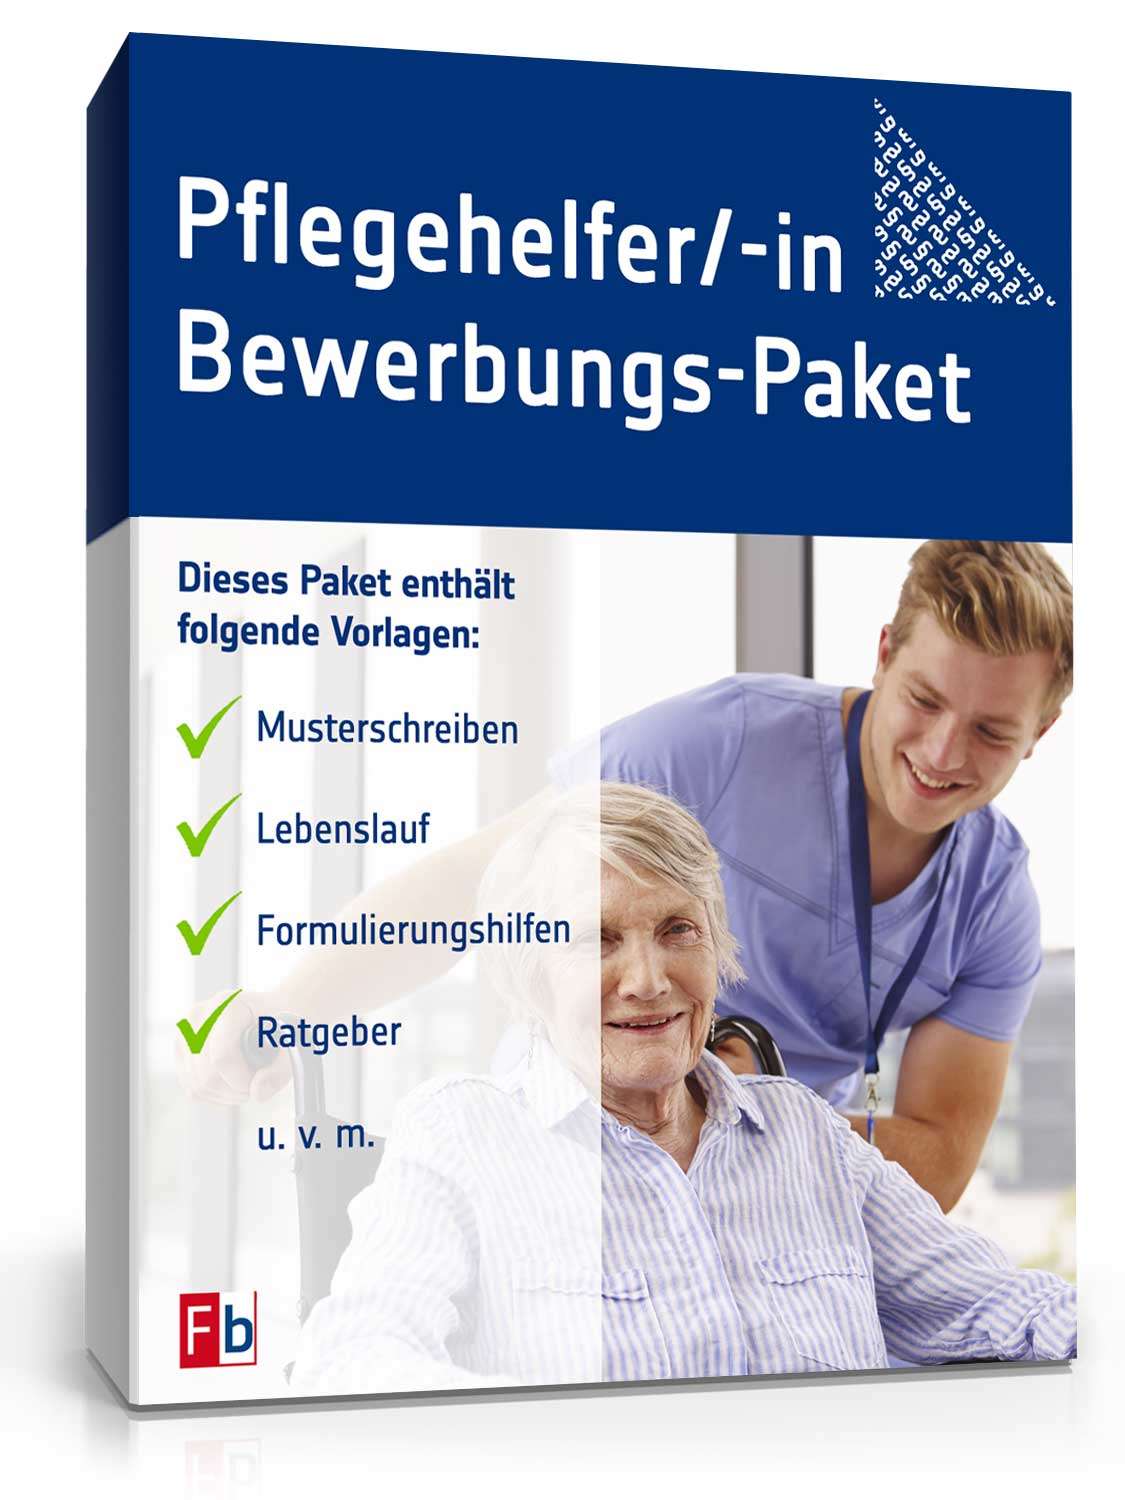 Hauptbild des Produkts: Bewerbungs-Paket Pflegehelfer